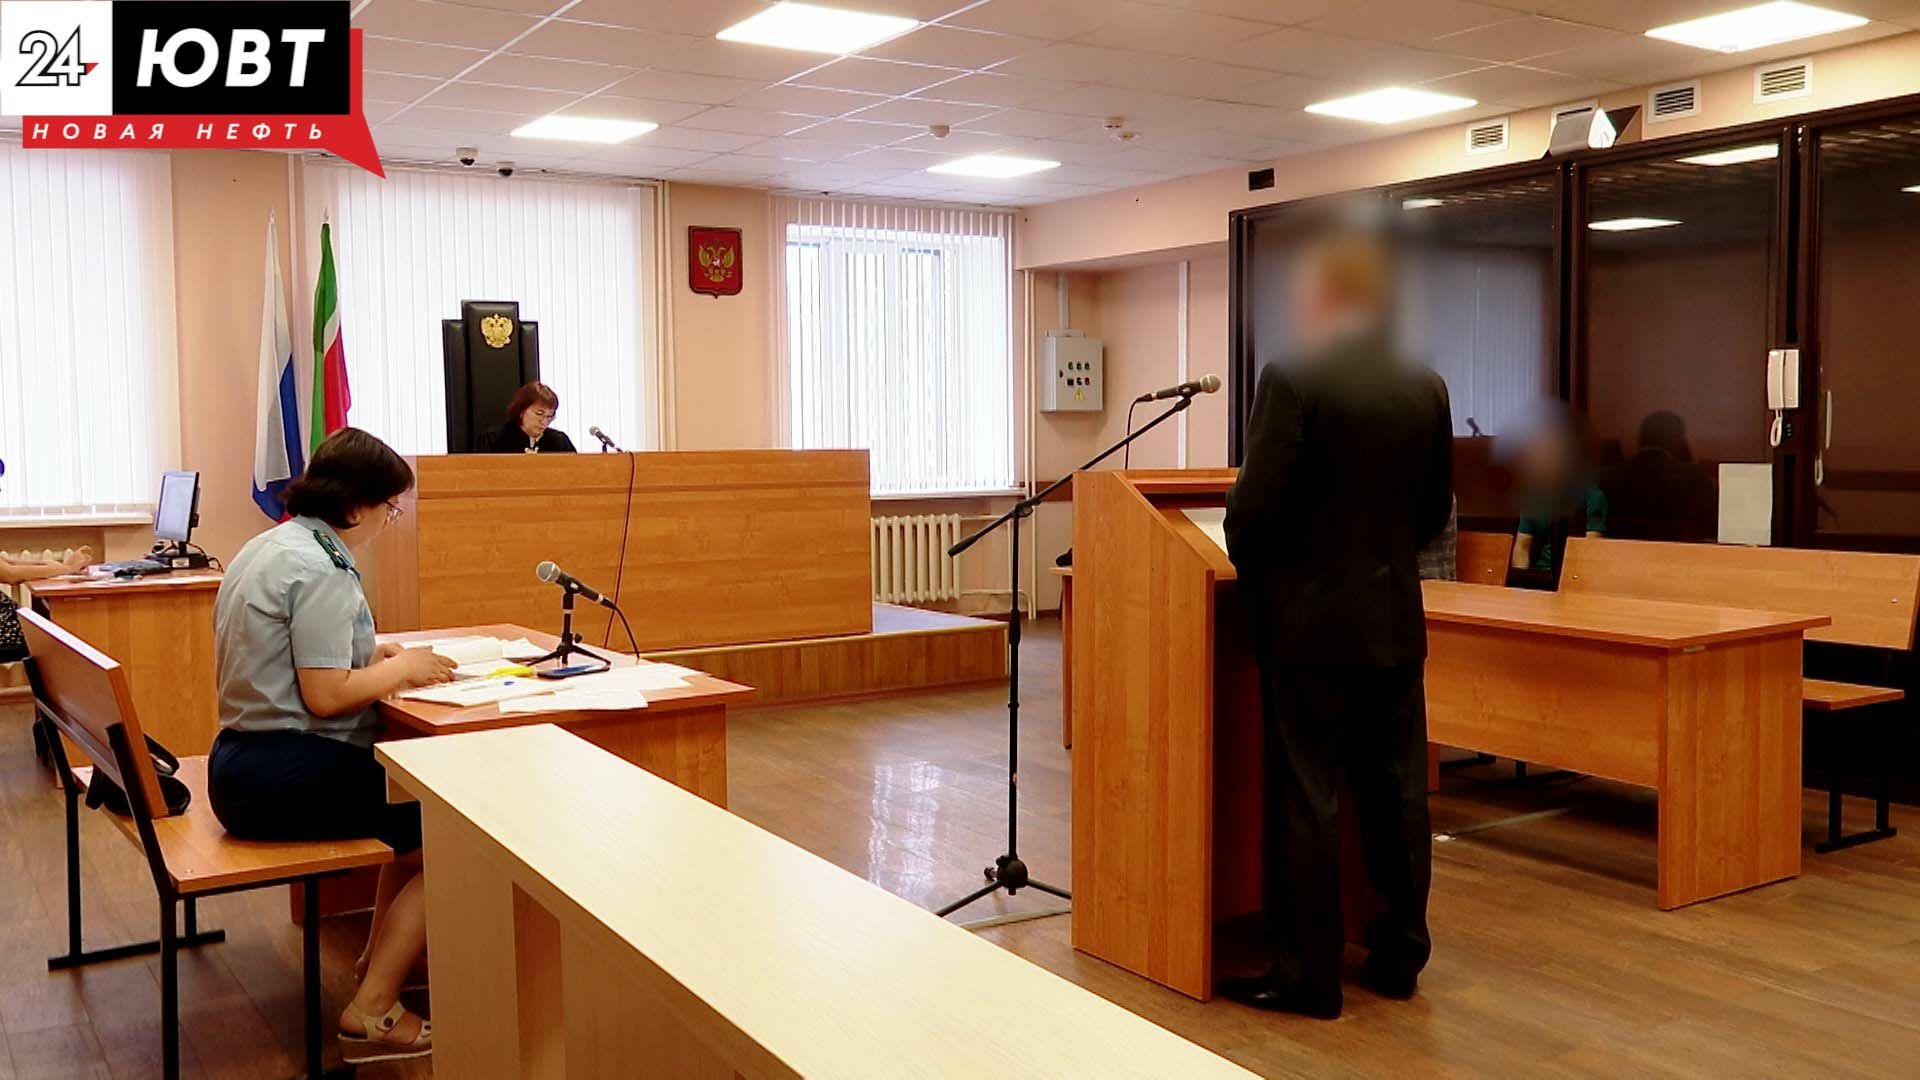 Жителю Альметьевска грозит до 15 лет лишения свободы за хранение и распространение наркотиков